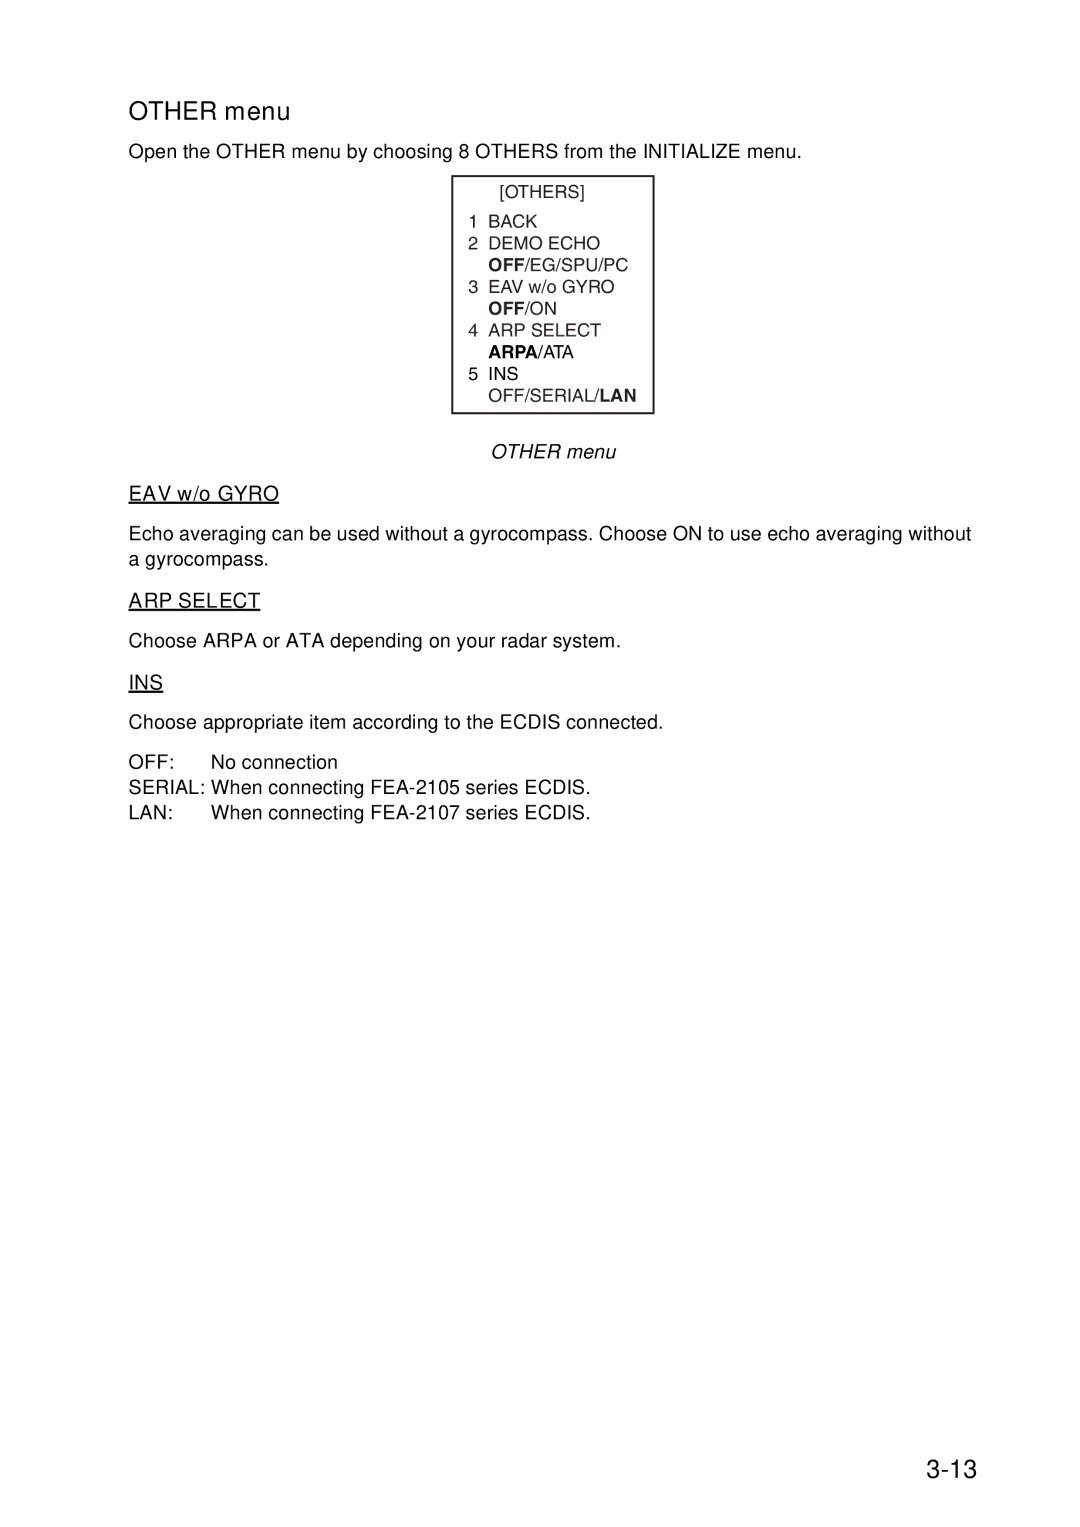 Furuno FAR-2157 installation manual Other menu, EAV w/o Gyro 